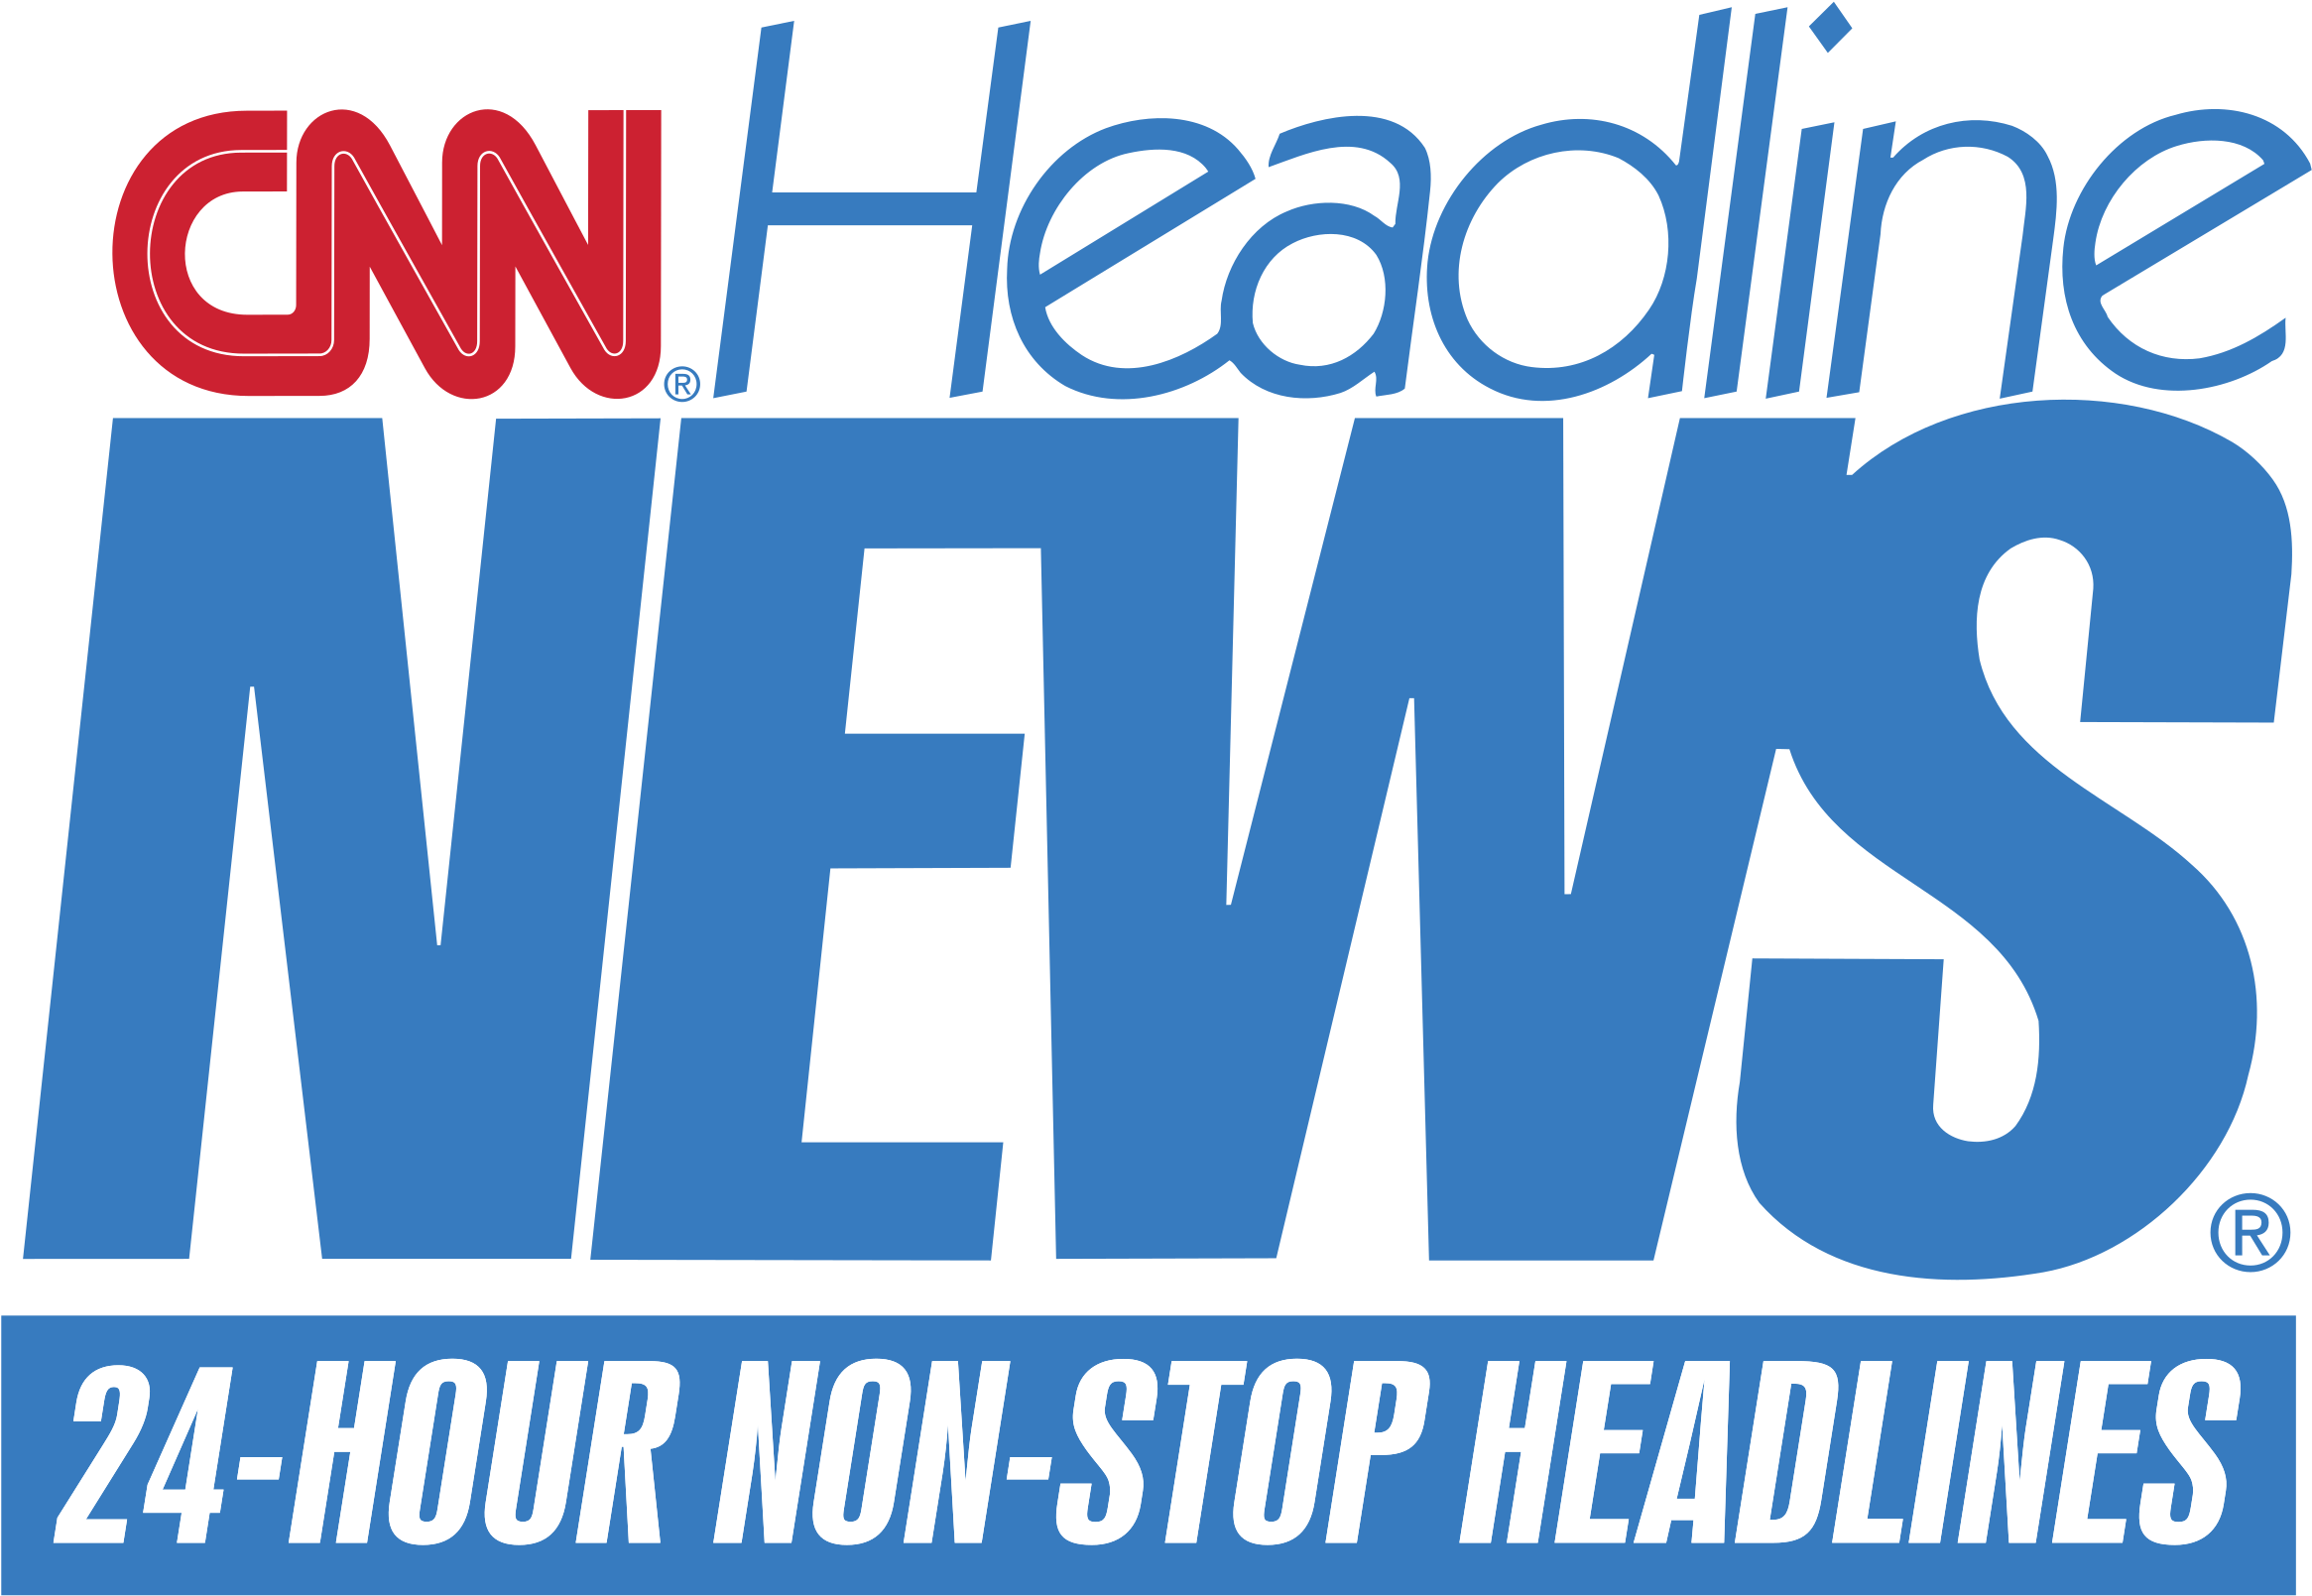 Cnn Headline News Logo Png Transparent - Cnn Headline News (2400x2400), Png Download